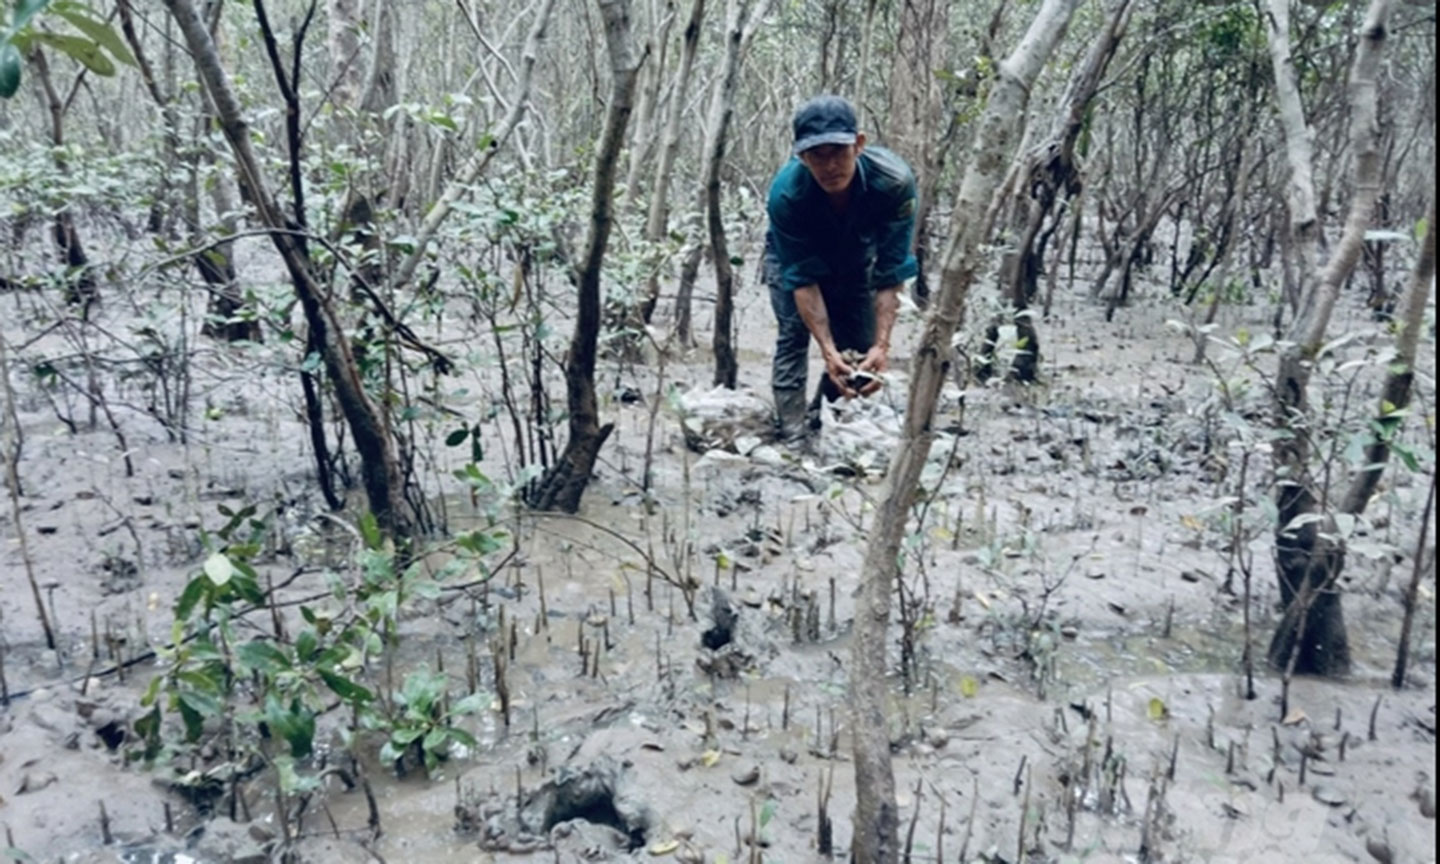 Mô hình nuôi vọp, ốc len dưới tán rừng ngập mặn Cù Lao Dung giúp người dân tăng thu nhập, ổn định cuộc sống.